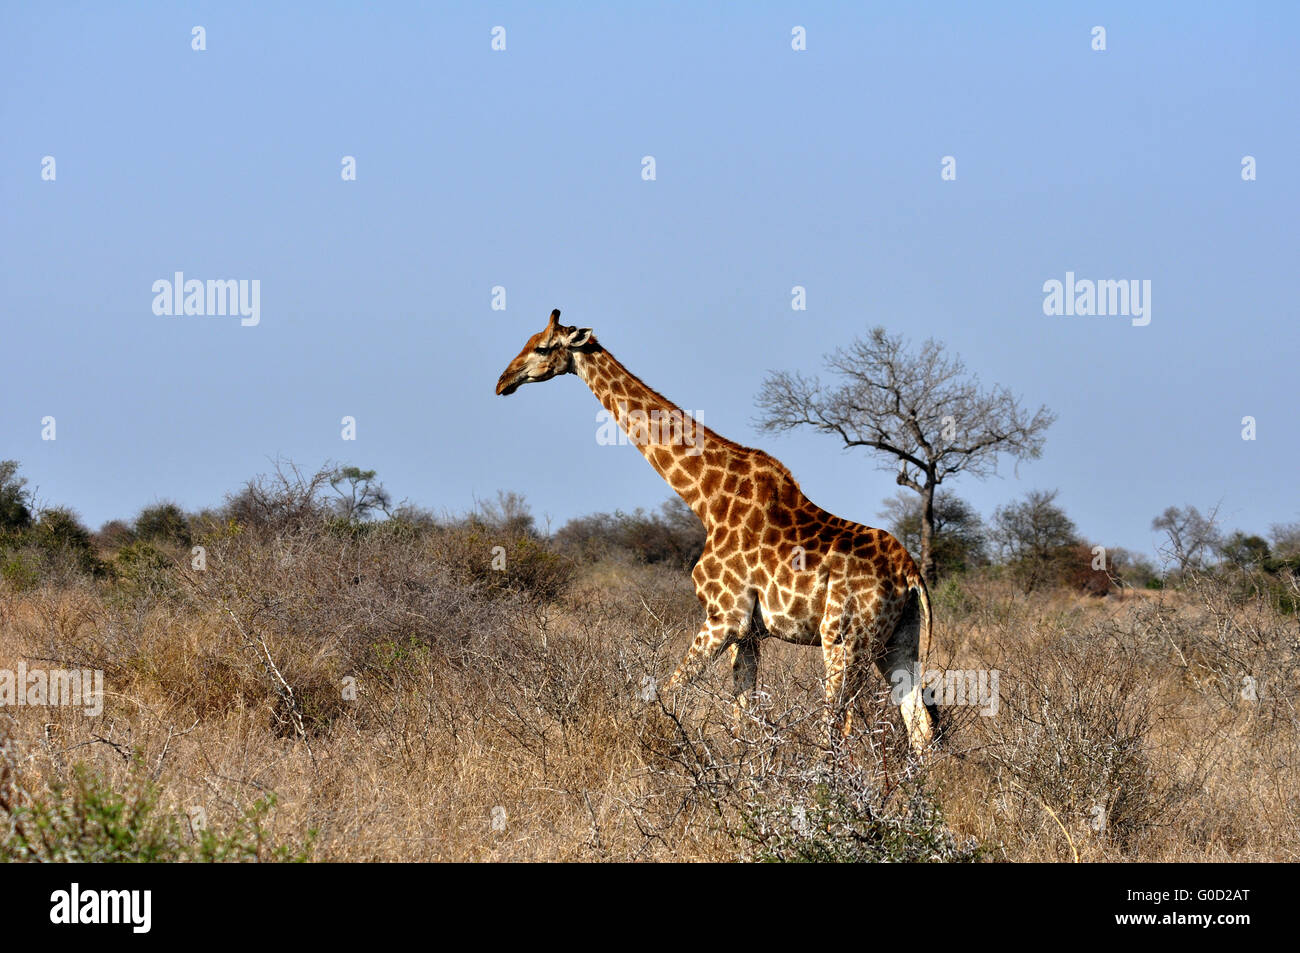 Female Giraffe in Africa with a calf. Stock Photo